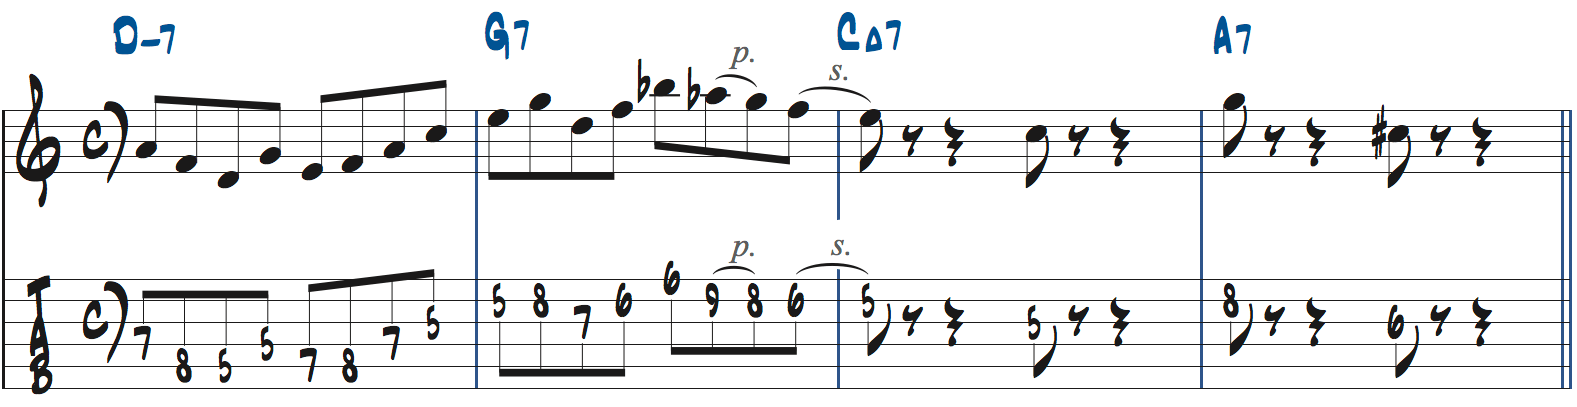 251リックを使った後のフレーズの作り方2楽譜